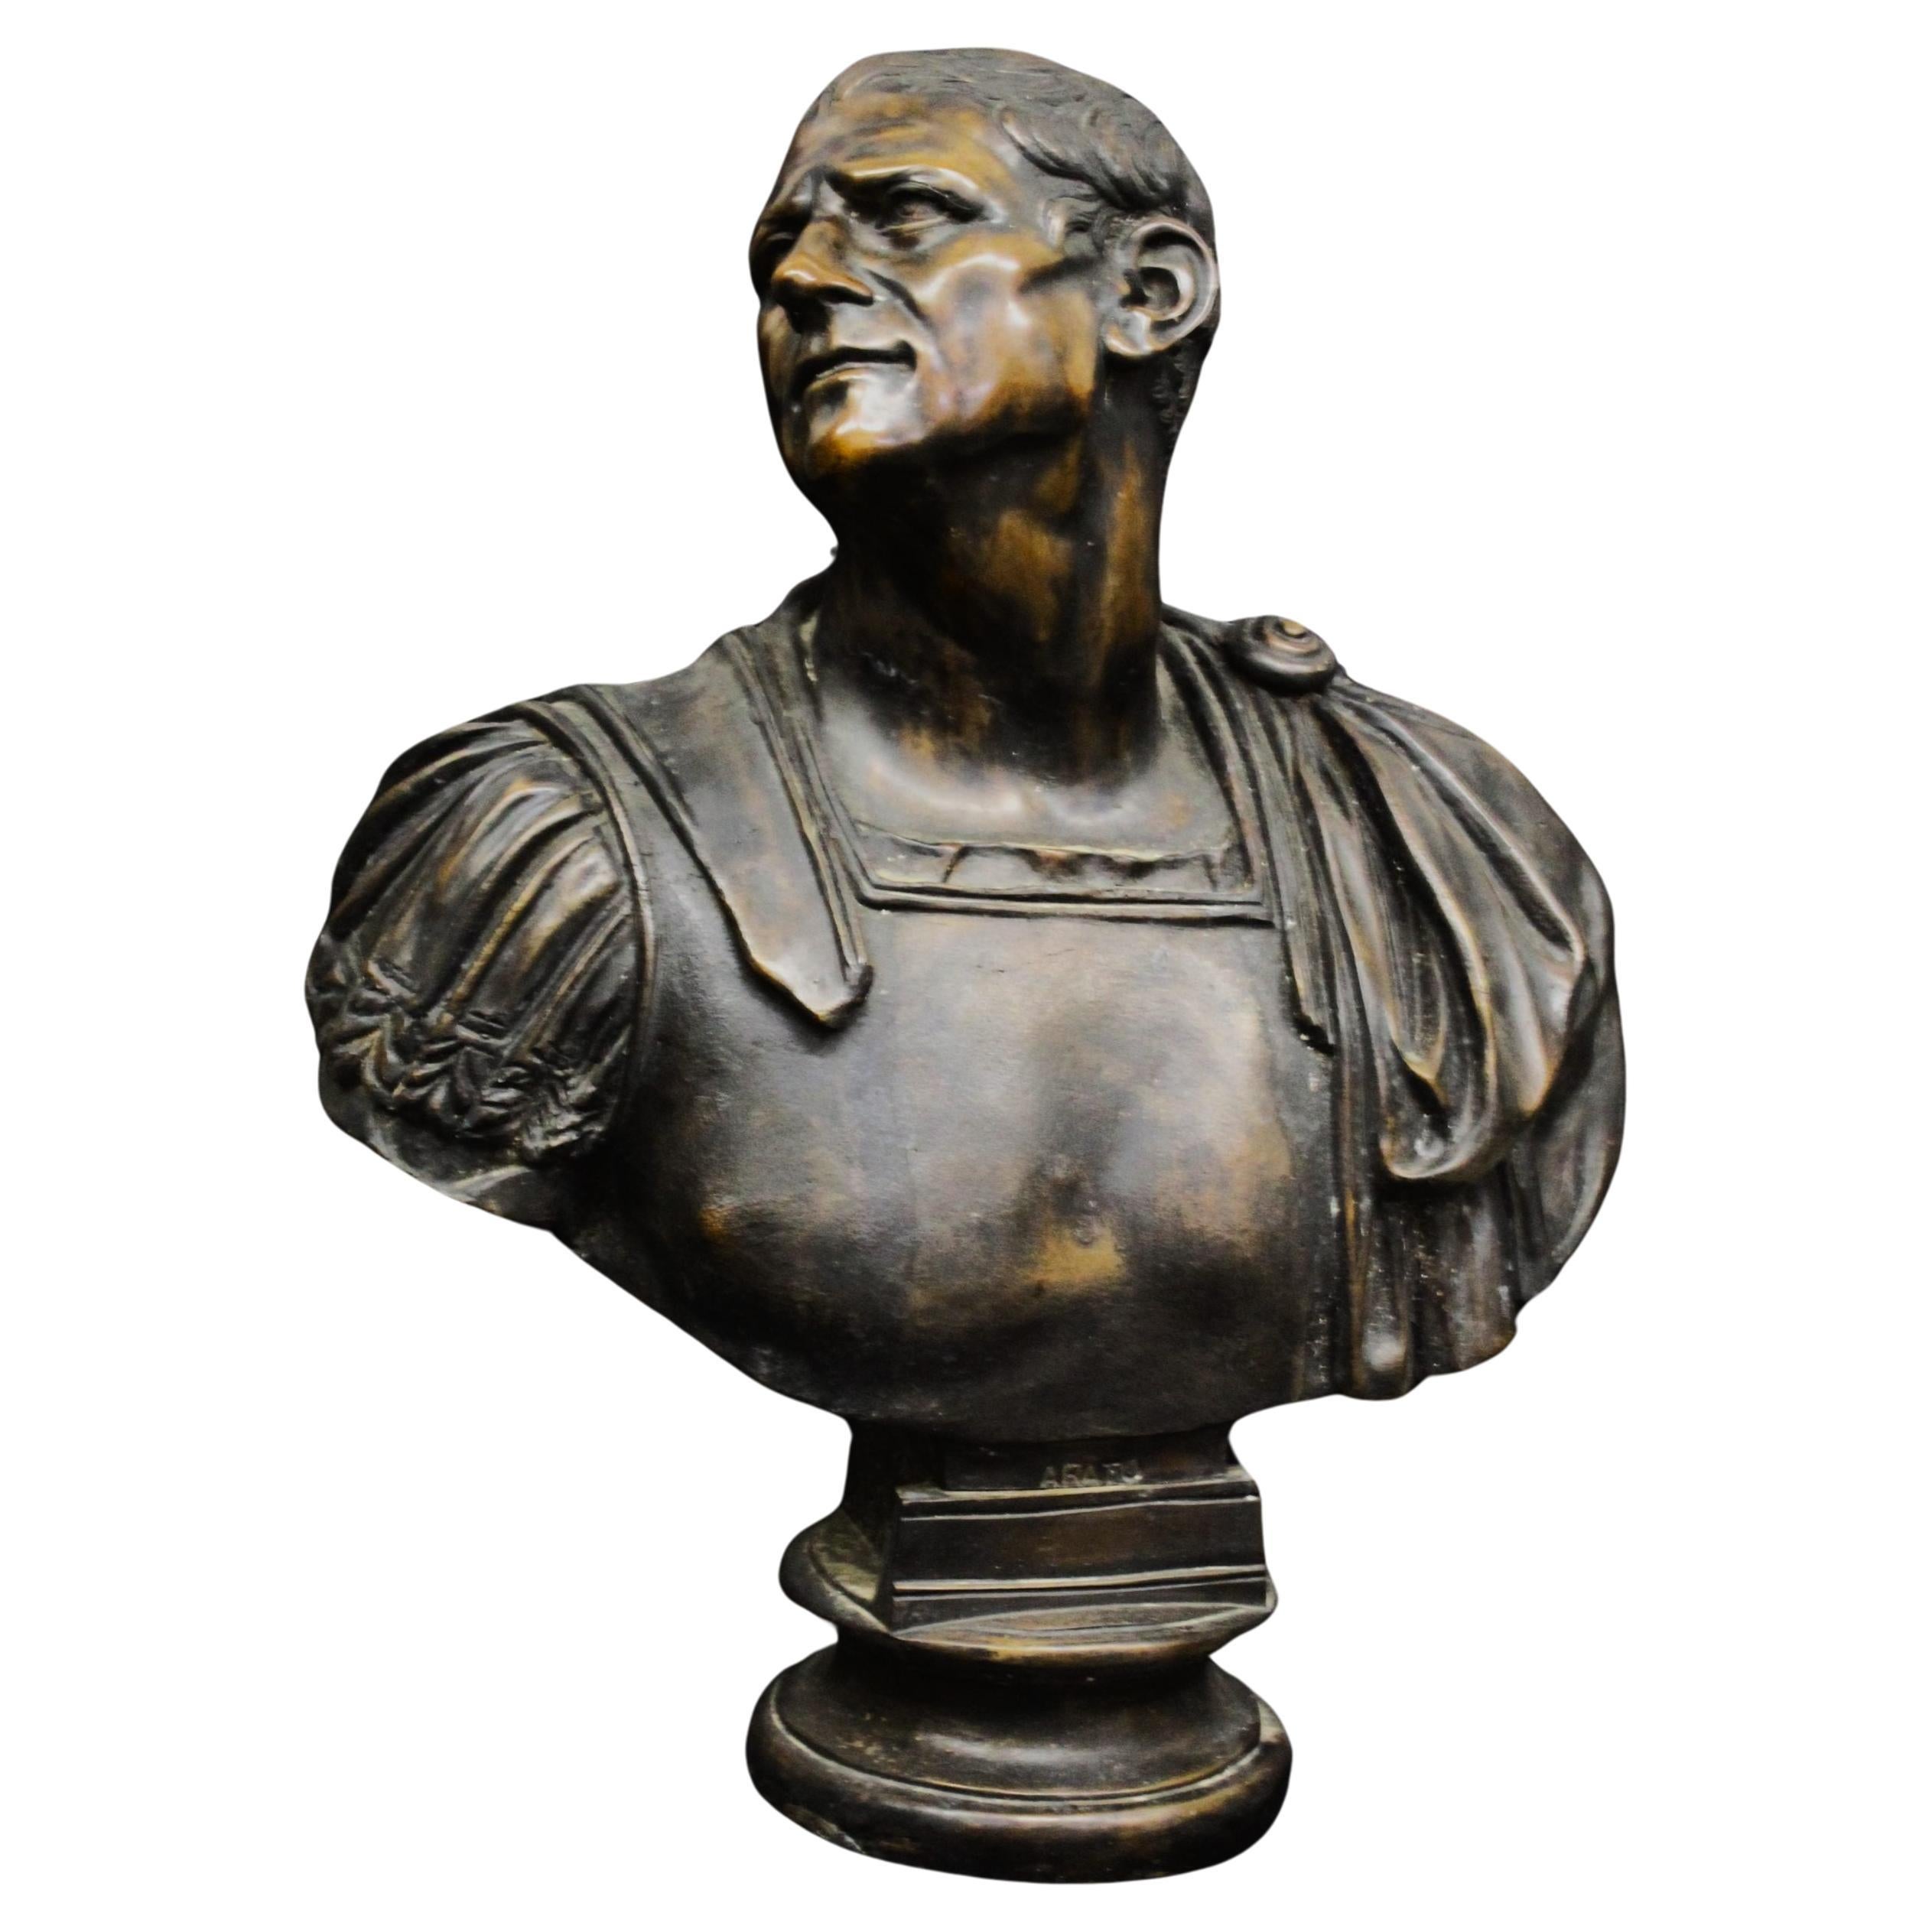 Sculpture of Emperor Aratus in bronze